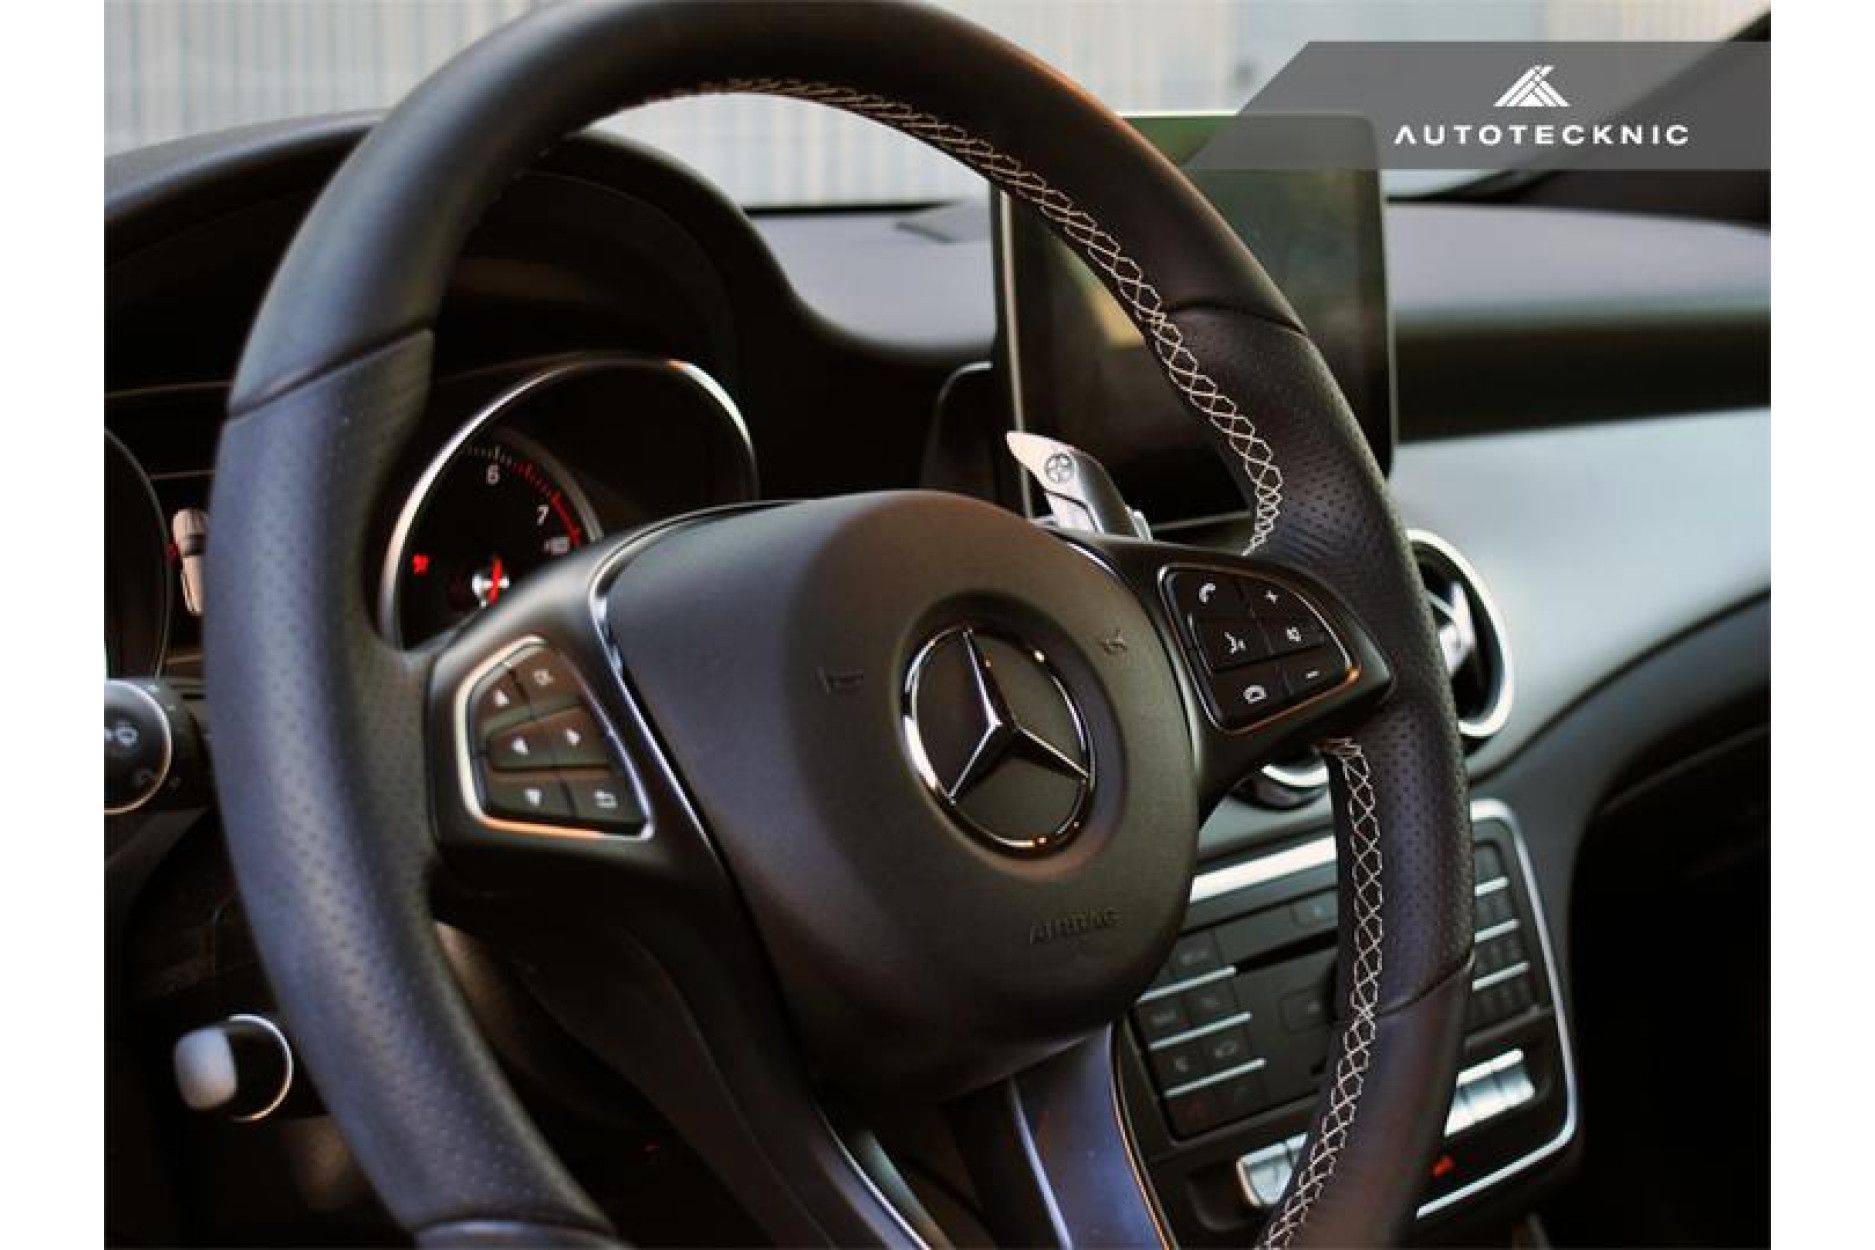 Autotecknic Aluminium Schaltwippen für Mercedes Benz kein AMG Silver Alloy (3) 